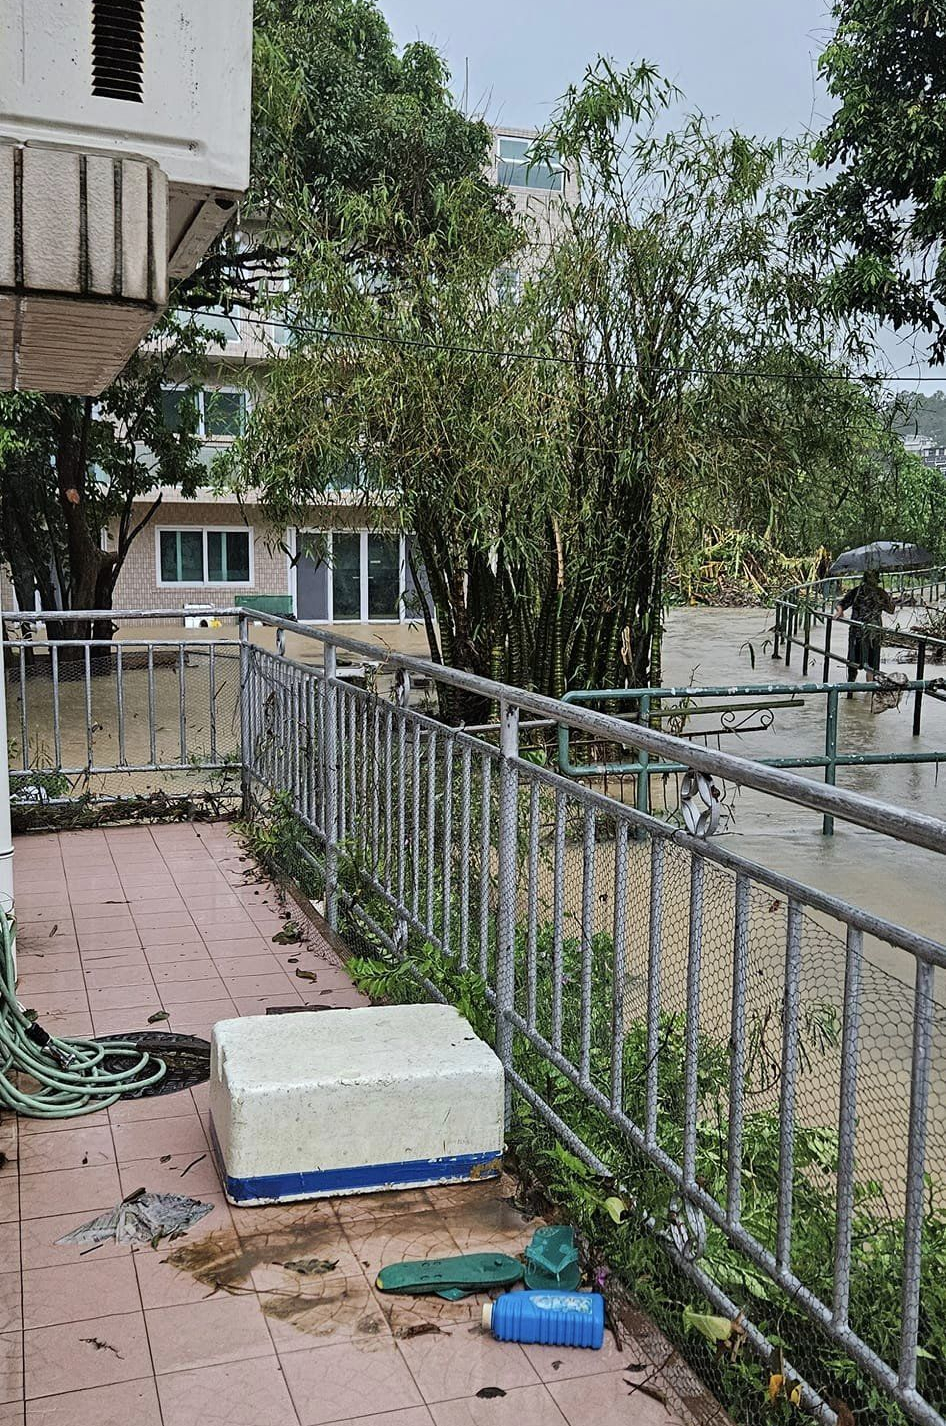 暴雨後亦不少村屋嚴重水浸。離島區議員劉舜婷FB